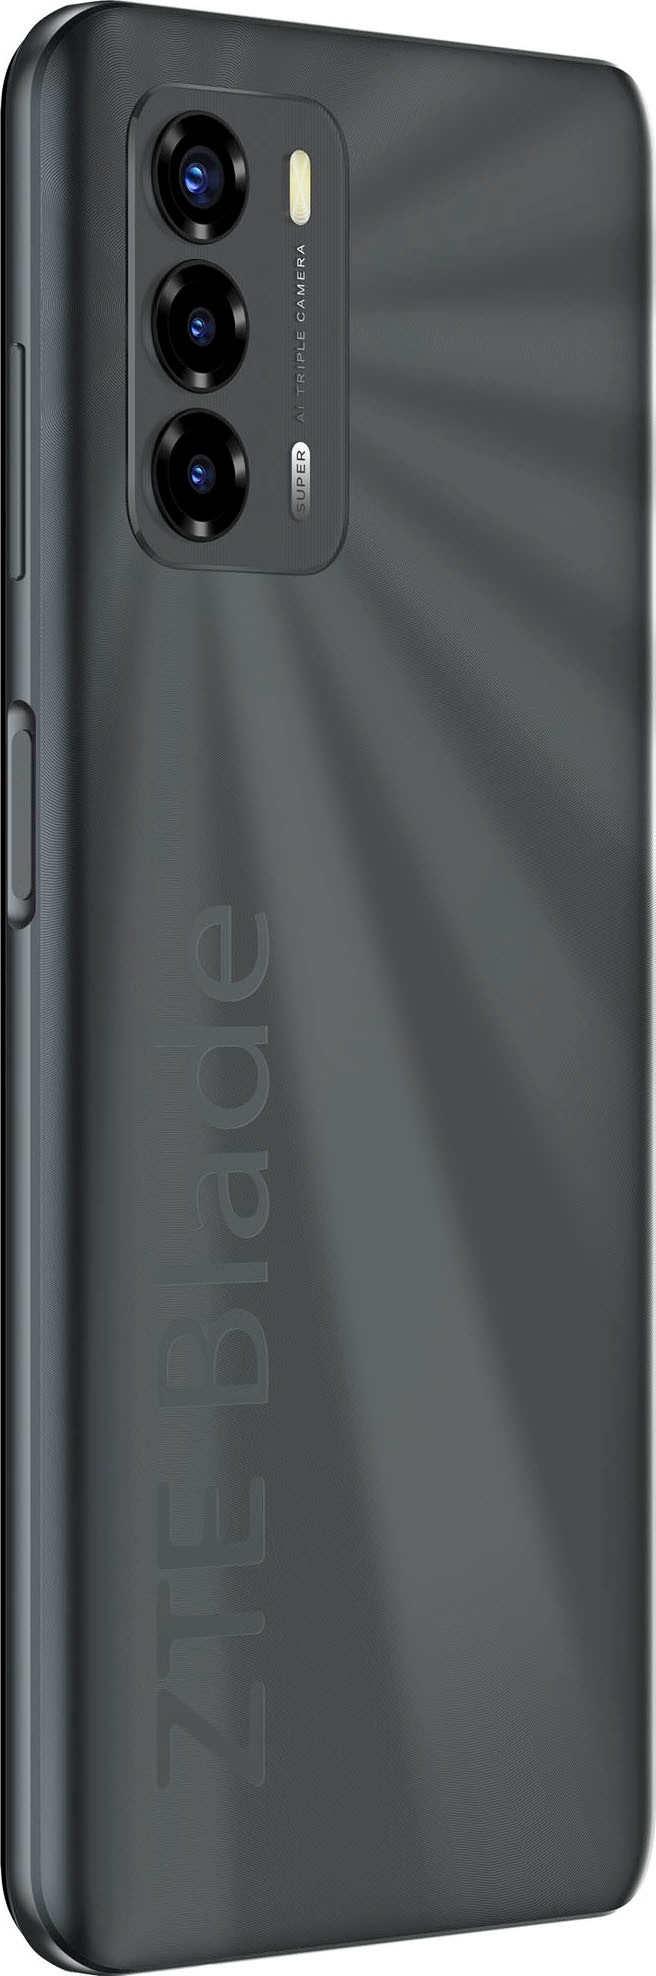 ZTE Smartphone »Blade V40 Vita«, schwarz, 17,1 cm/6,75 Zoll, 128 GB  Speicherplatz, 48 MP Kamera online kaufen